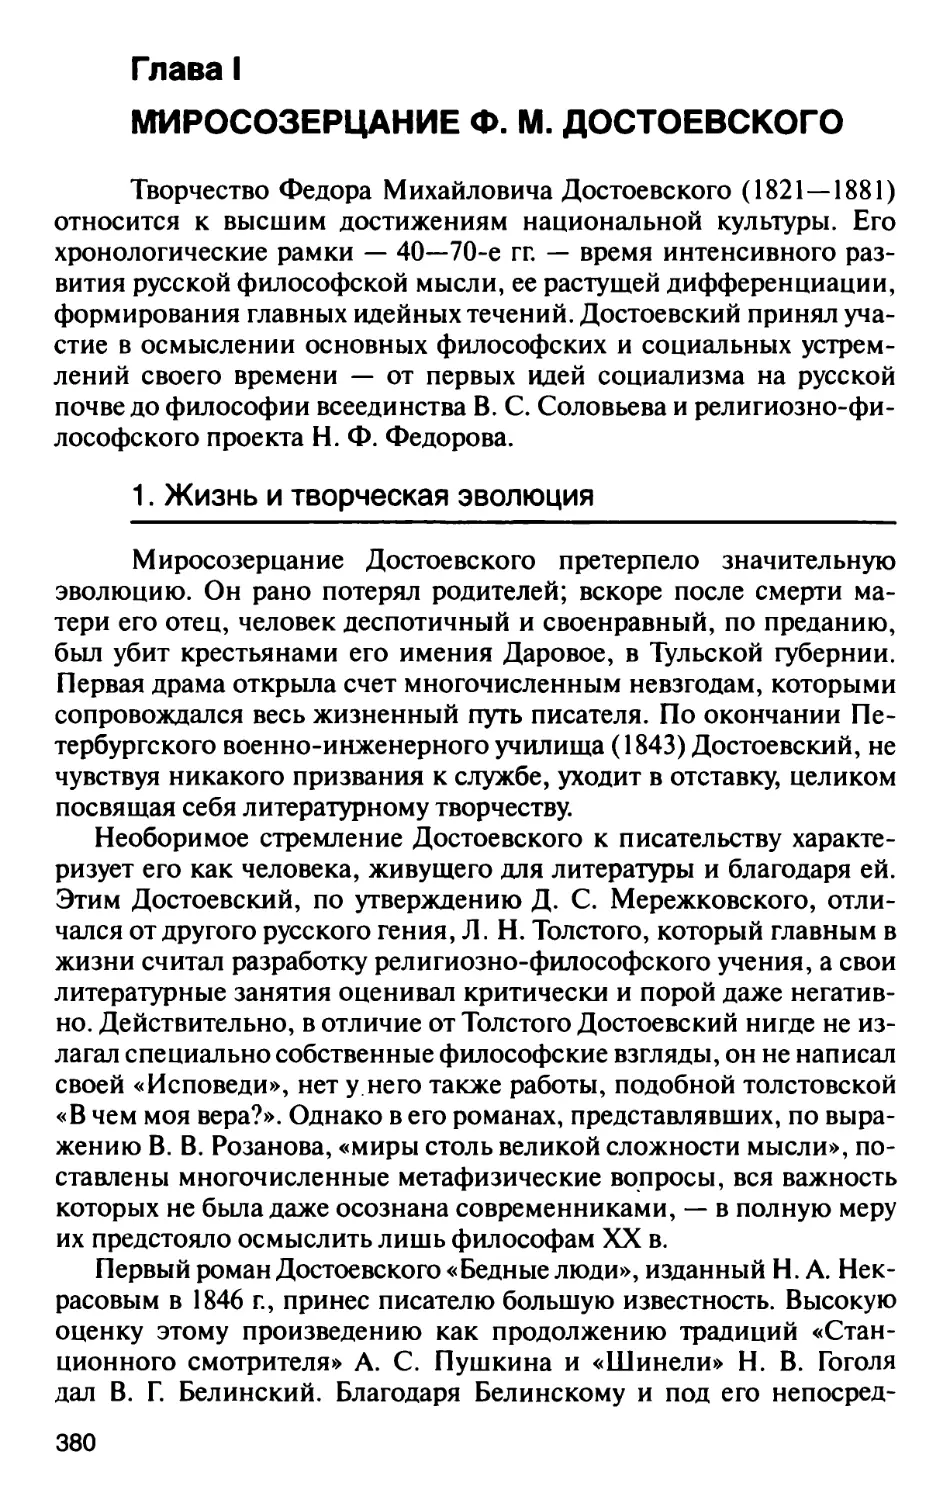 Глава I. Миросозерцание Ф.М. Достоевского